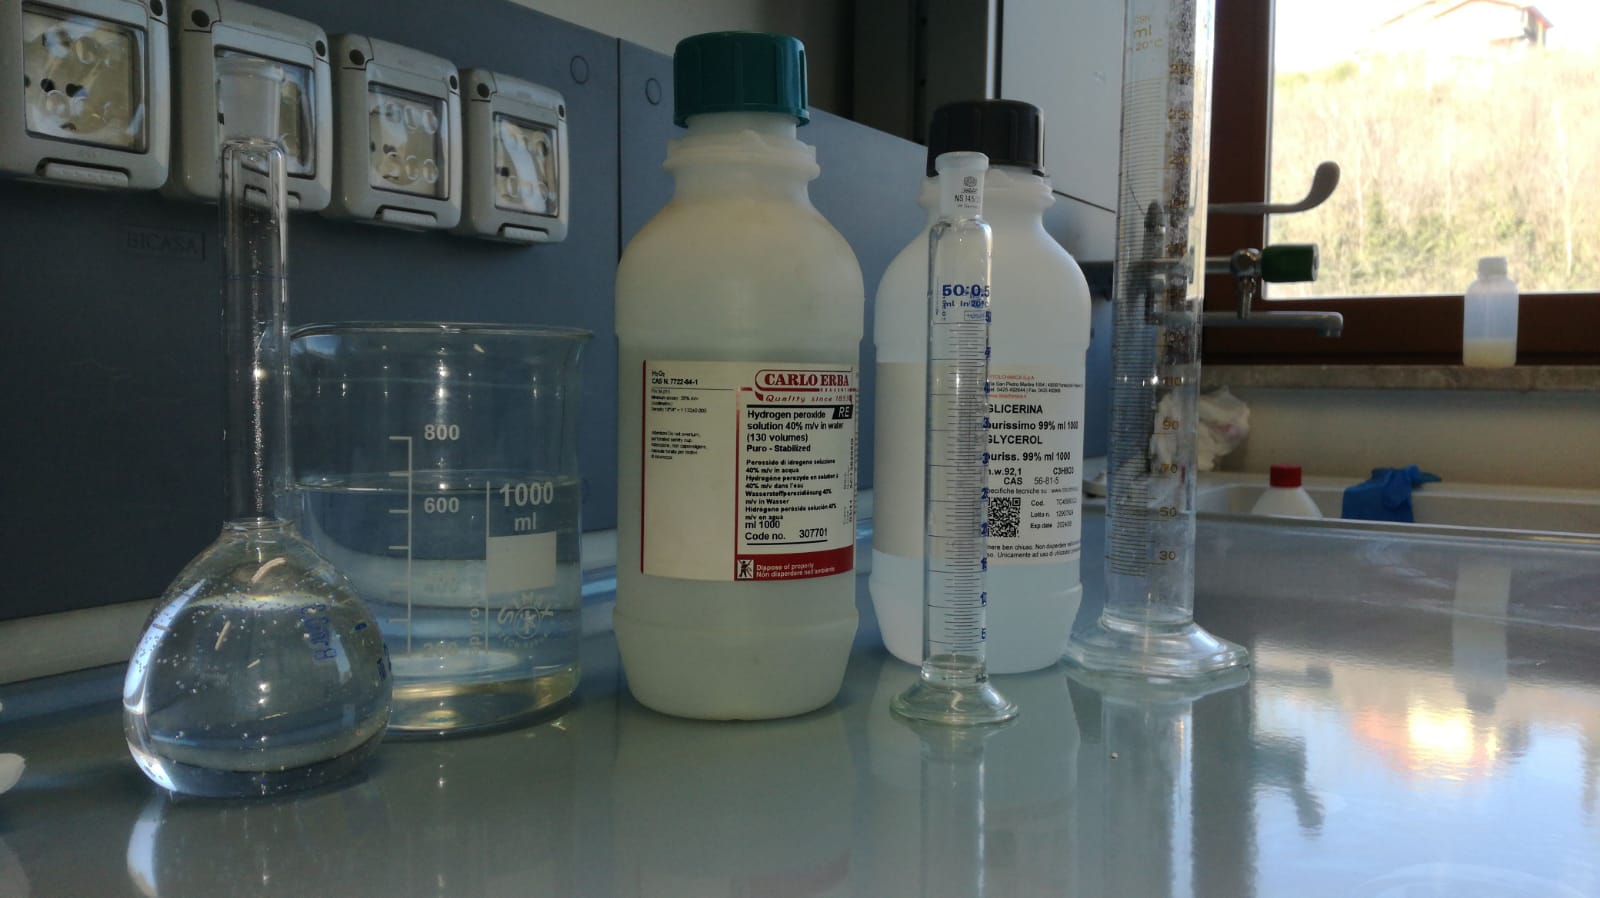 Covid-19: Arpac in grado di produrre disinfettante, ma serve etanolo